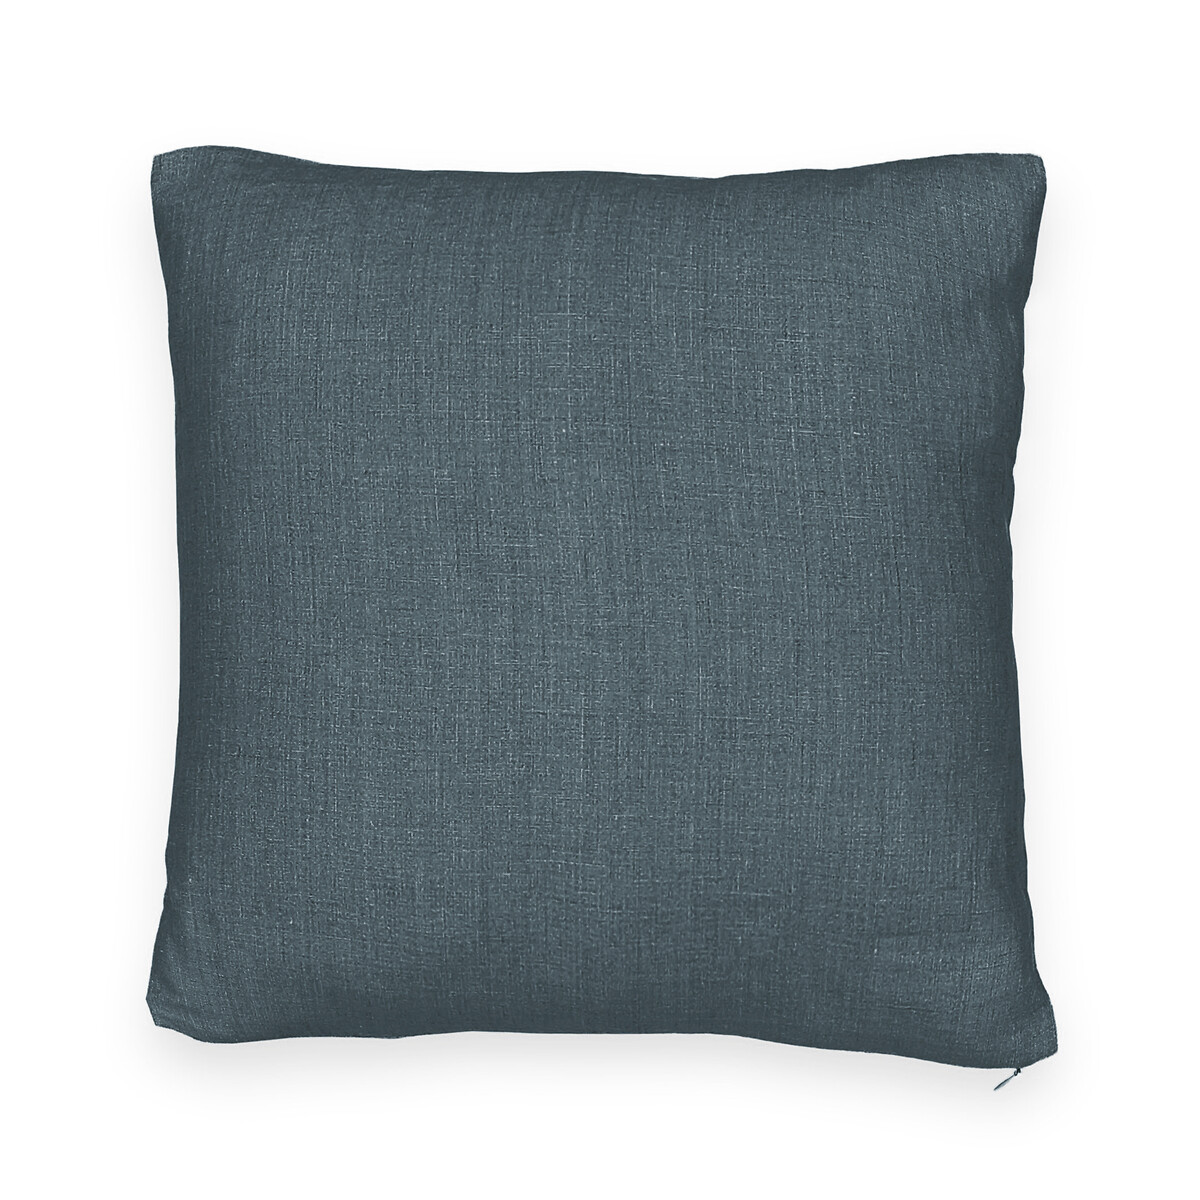 Чехол для подушки из стираного льна Onega  50 x 30 см синий